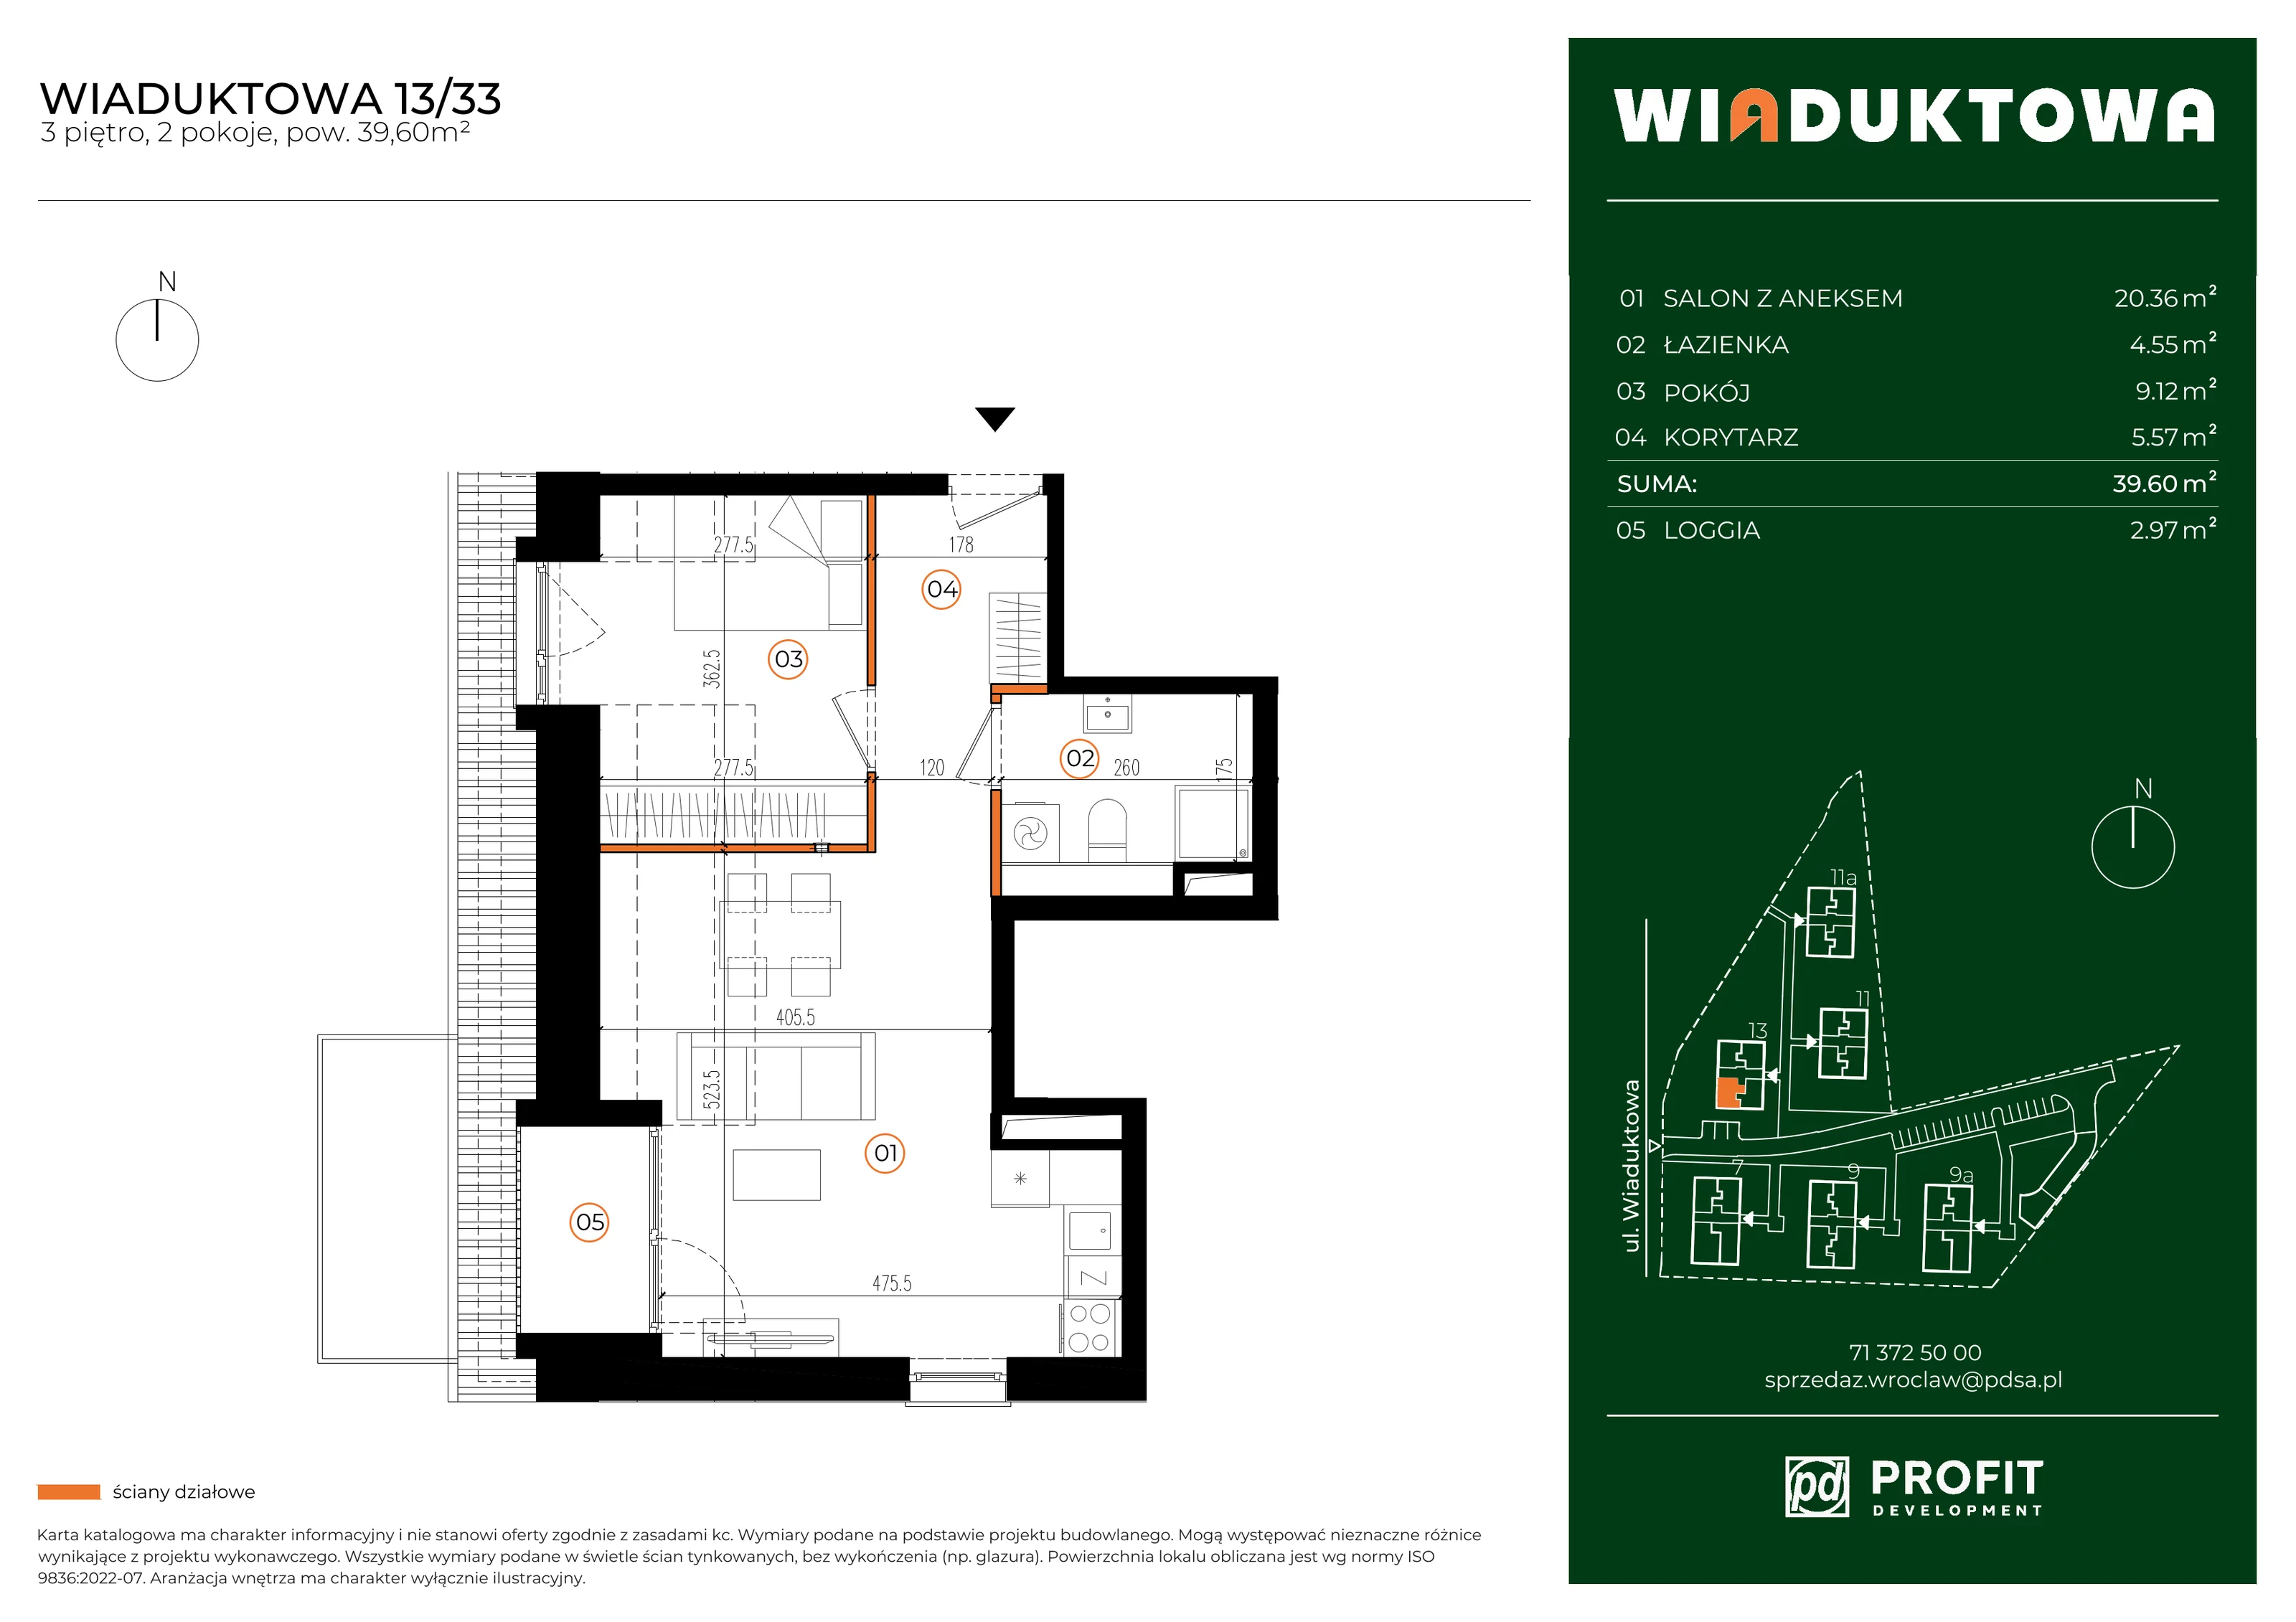 Mieszkanie 39,60 m², piętro 3, oferta nr WI/13/33, Wiaduktowa, Wrocław, Krzyki-Partynice, Krzyki, ul. Wiaduktowa